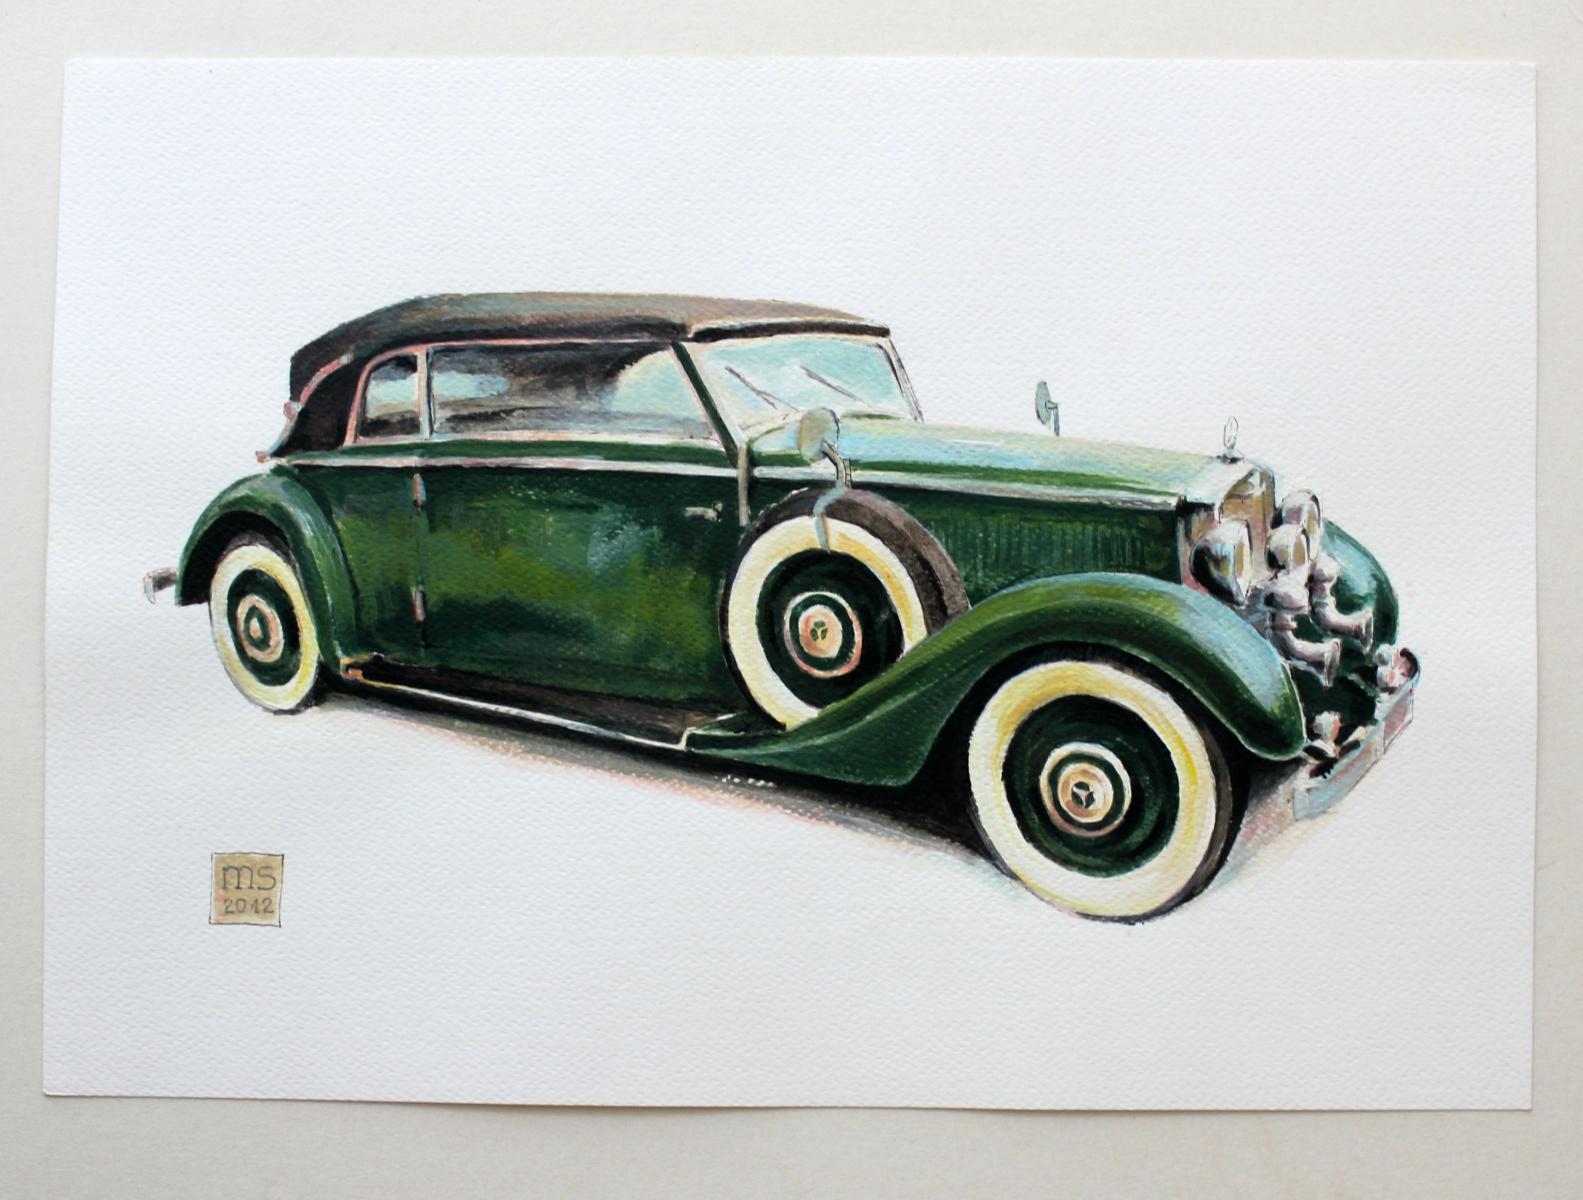 Mercedes W18 - XXI Century, Contemporary Watercolor & Ink Painting, Vehicle, Car - Realist Art by Mariusz Szałajdewicz